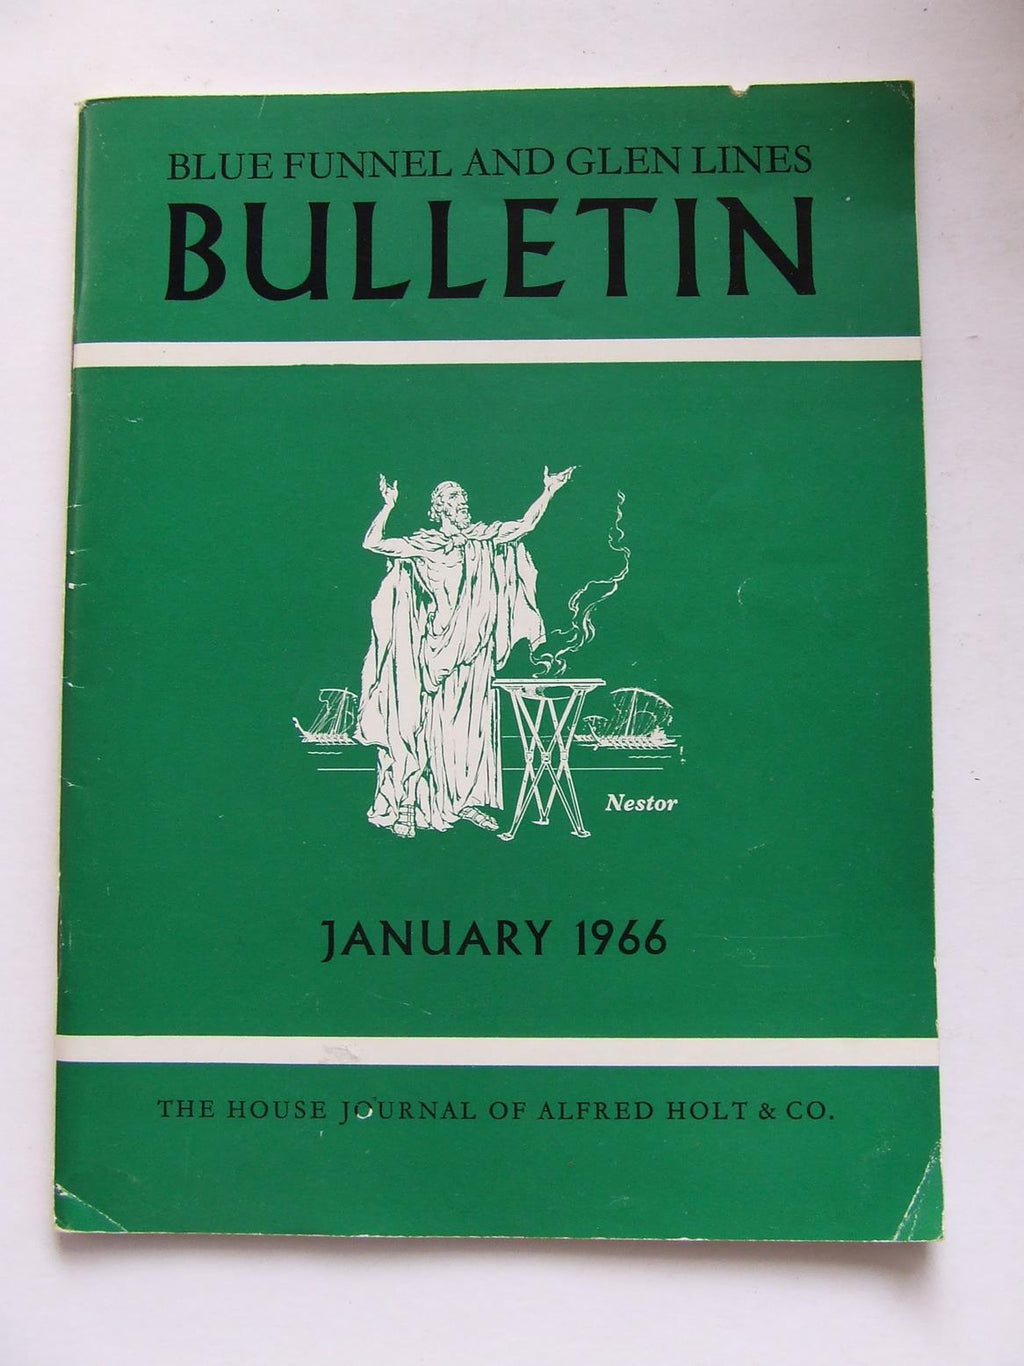 Blue Funnel & Glen Lines - Bulletin January 1966